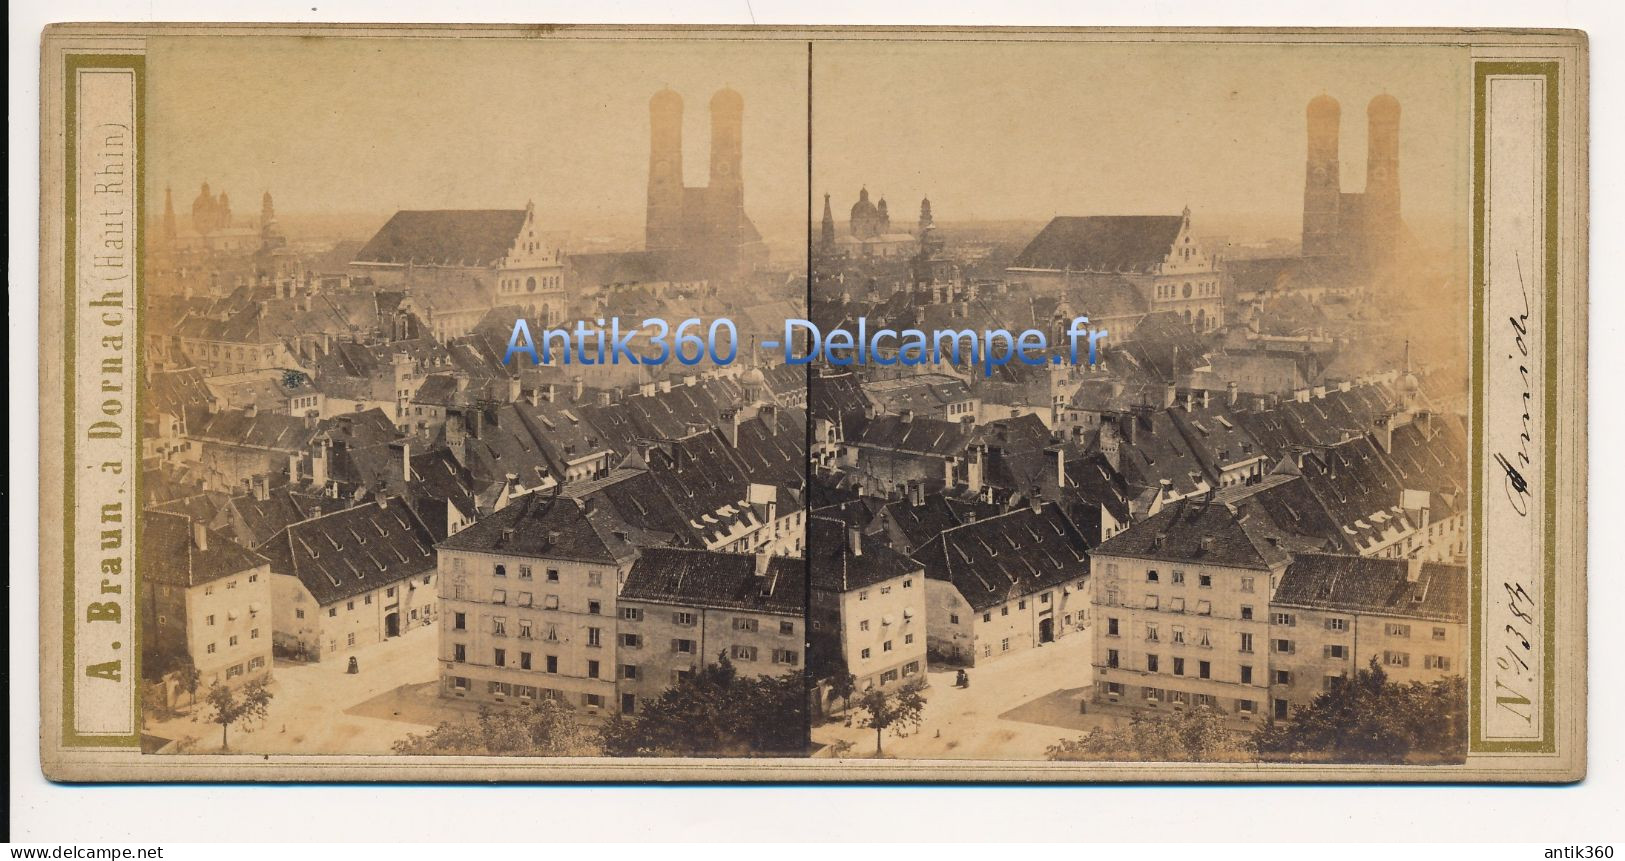 Photographie Ancienne Vue Stéréoscopique Circa 1860 Allemagne Vue De Munich Photographe Adolphe BRAUN - Fotos Estereoscópicas